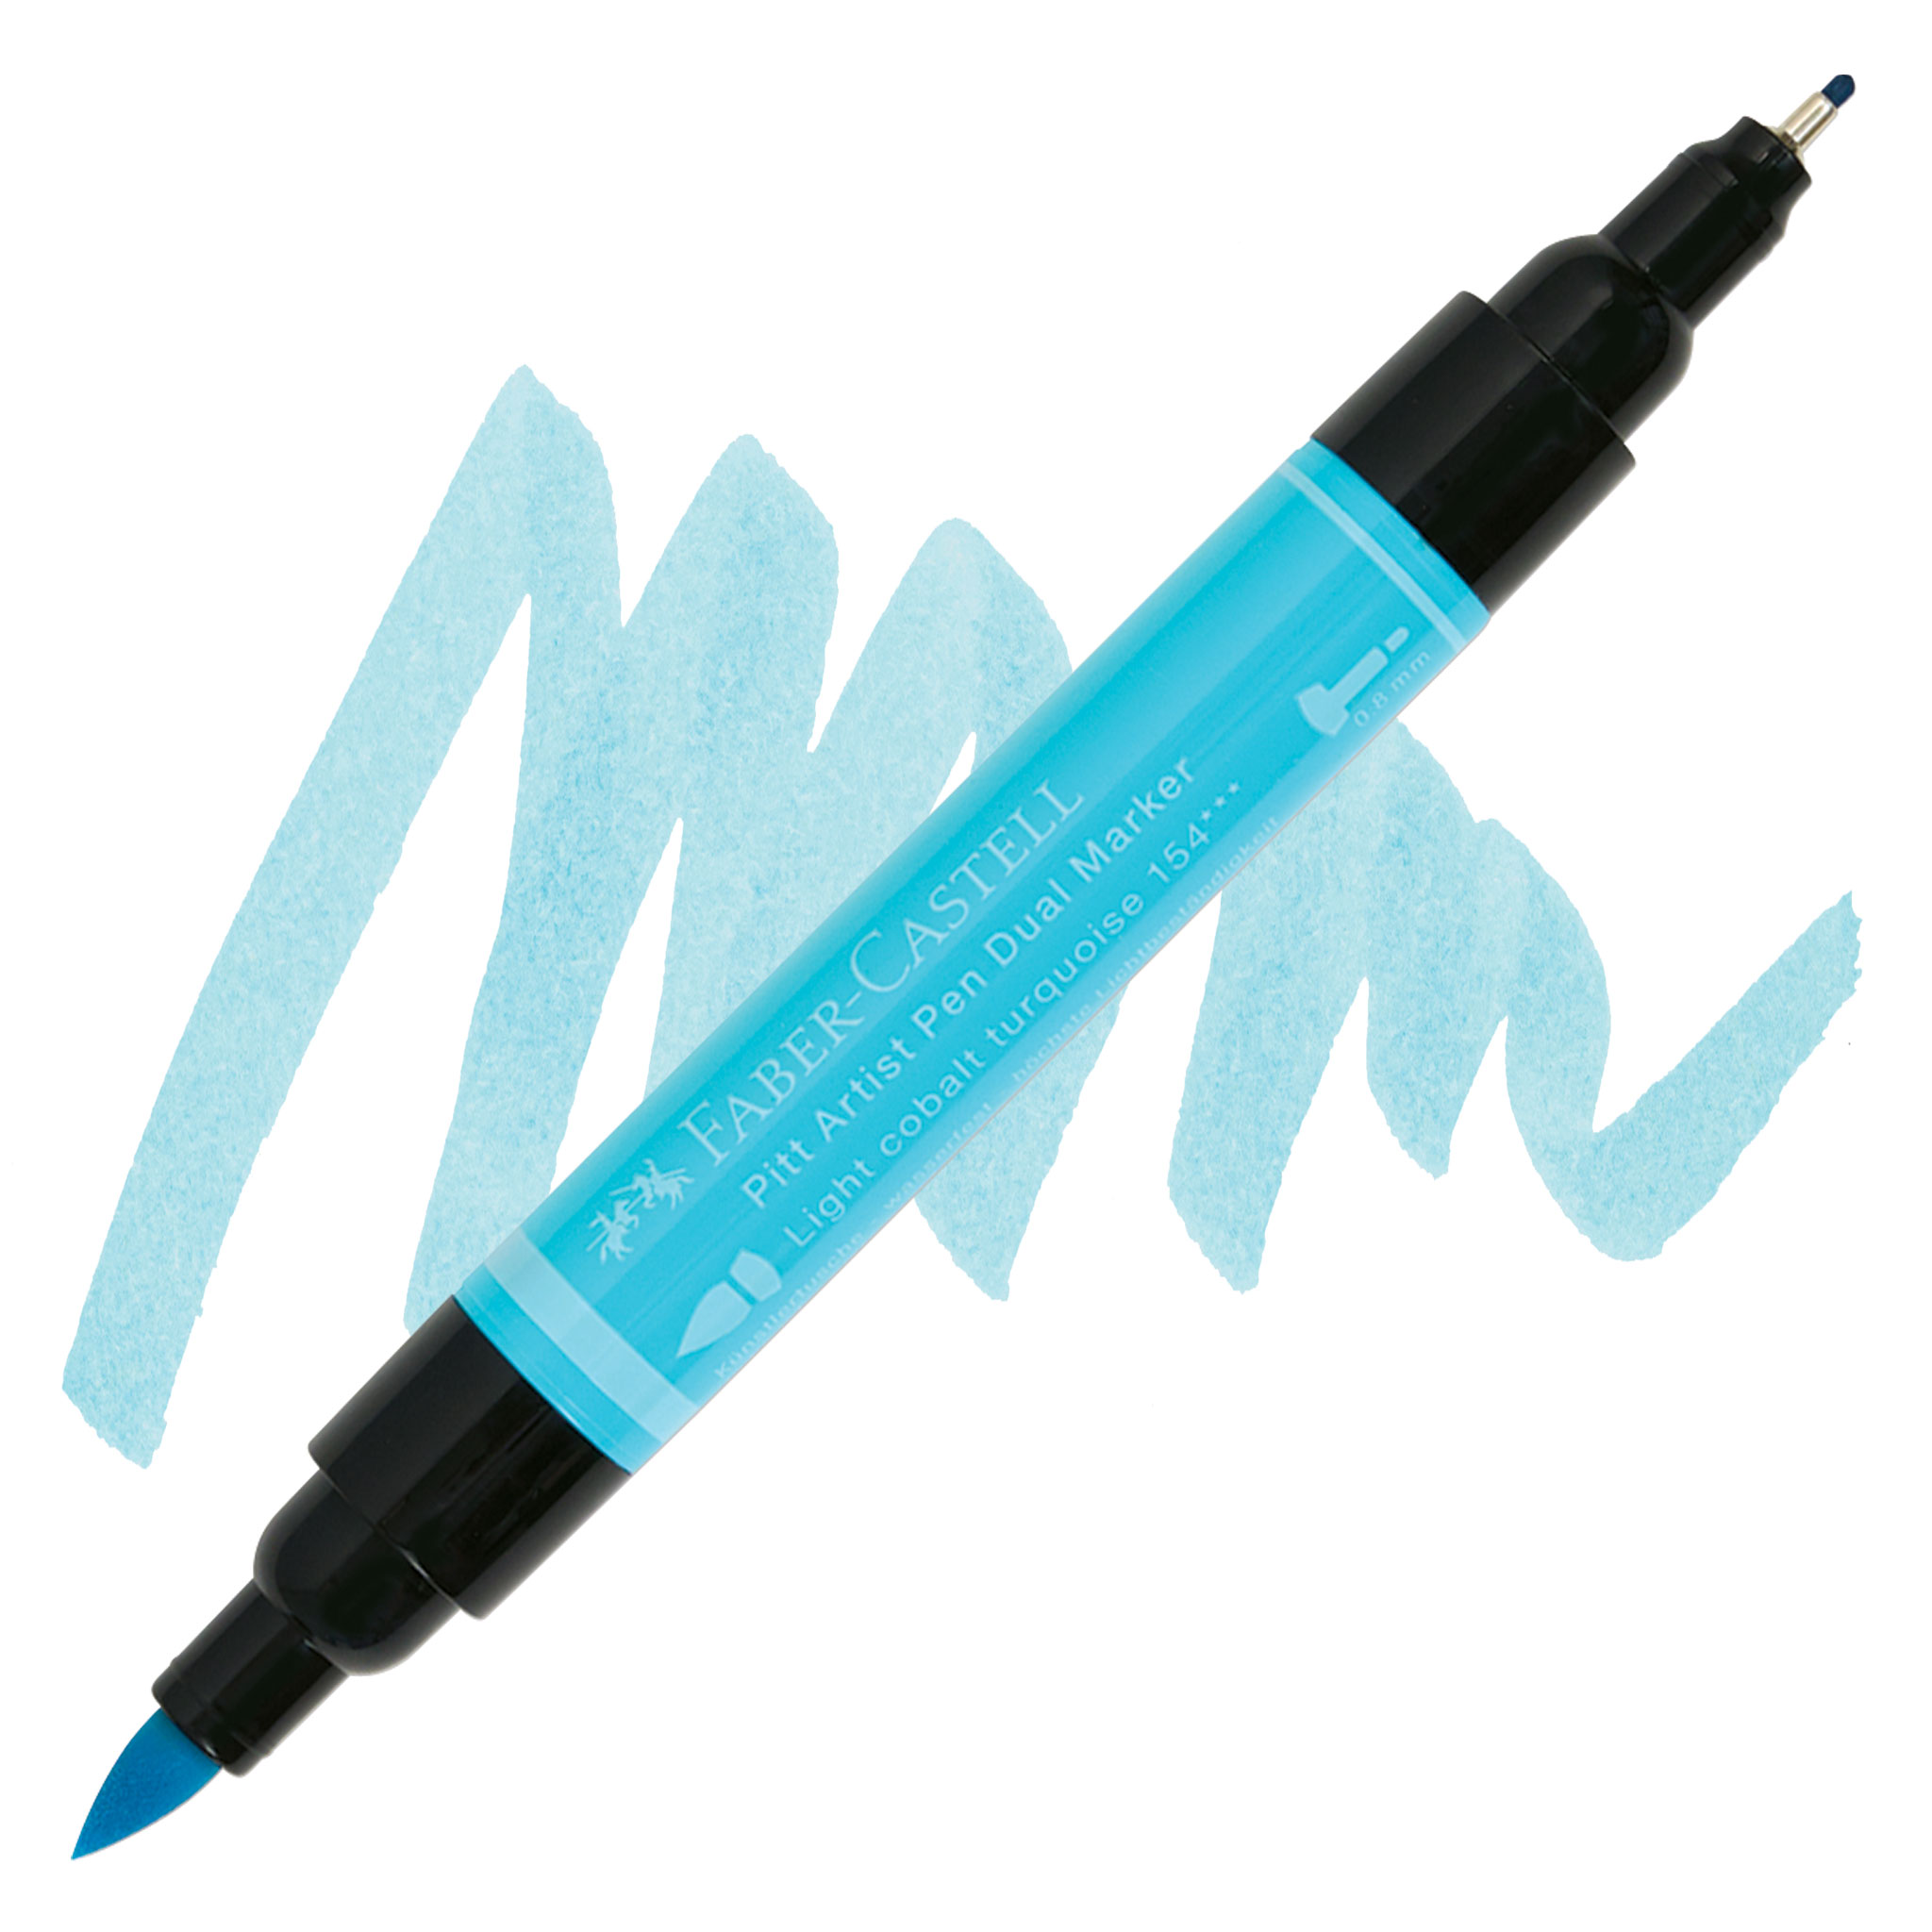 Faber-Castell -Â Mix and Match Pitt Artist Pen Writing Set Blue